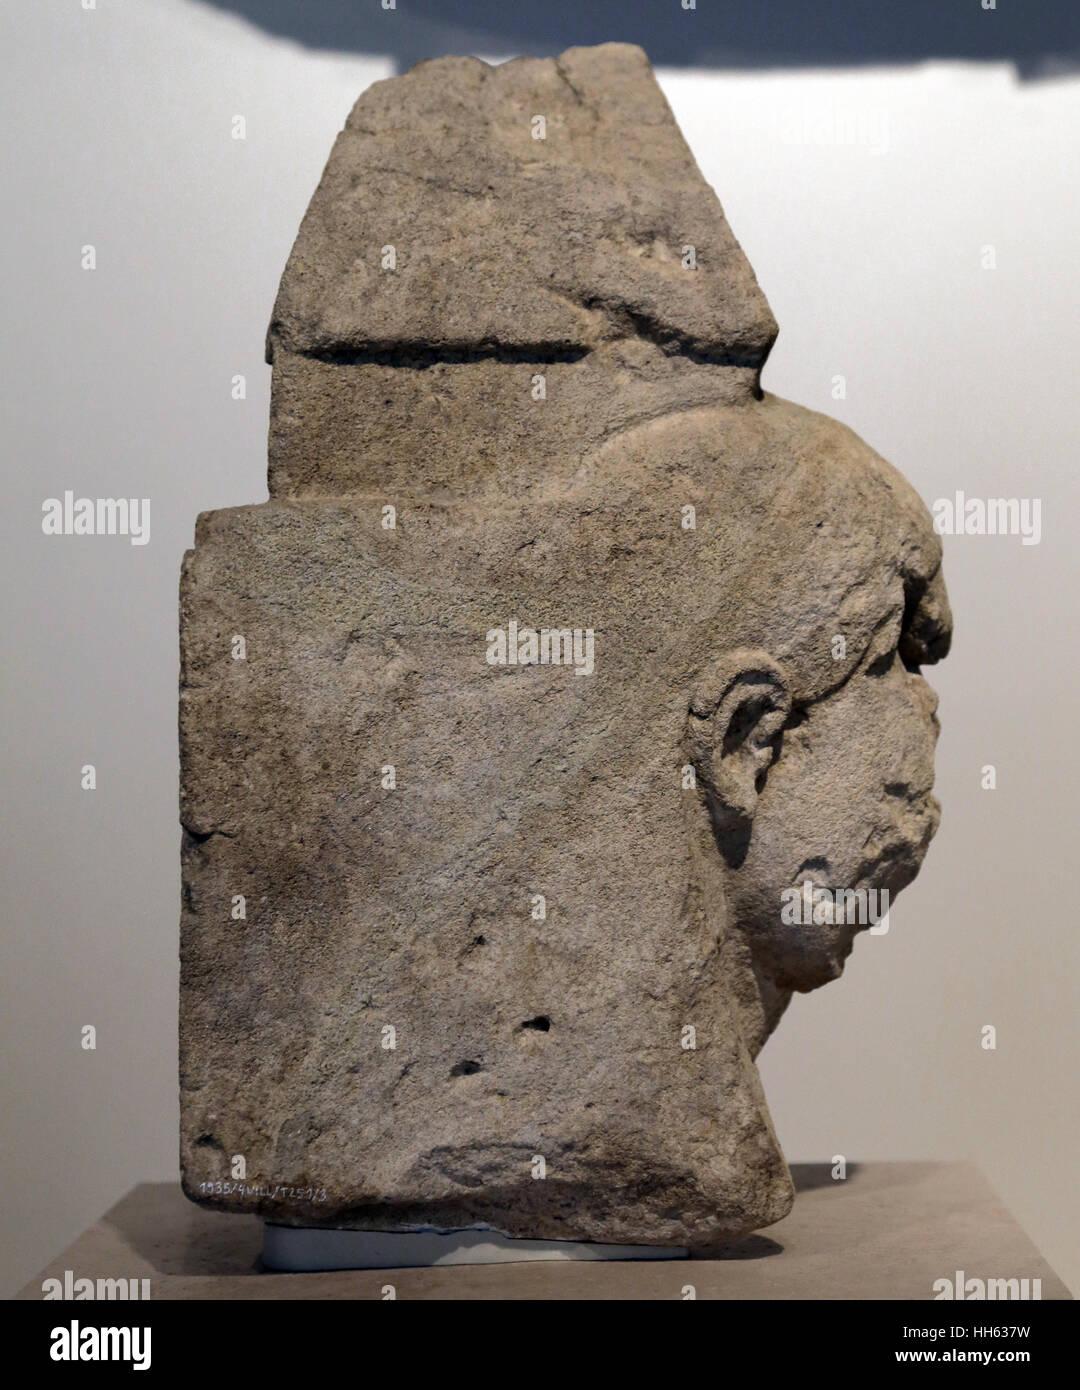 La stèle. 6ème siècle avant JC. Nécropole de Villaricos, Almanzora, Almeria, Espagne. Décorées avec une coiffure Egytian figure. Espagne Banque D'Images